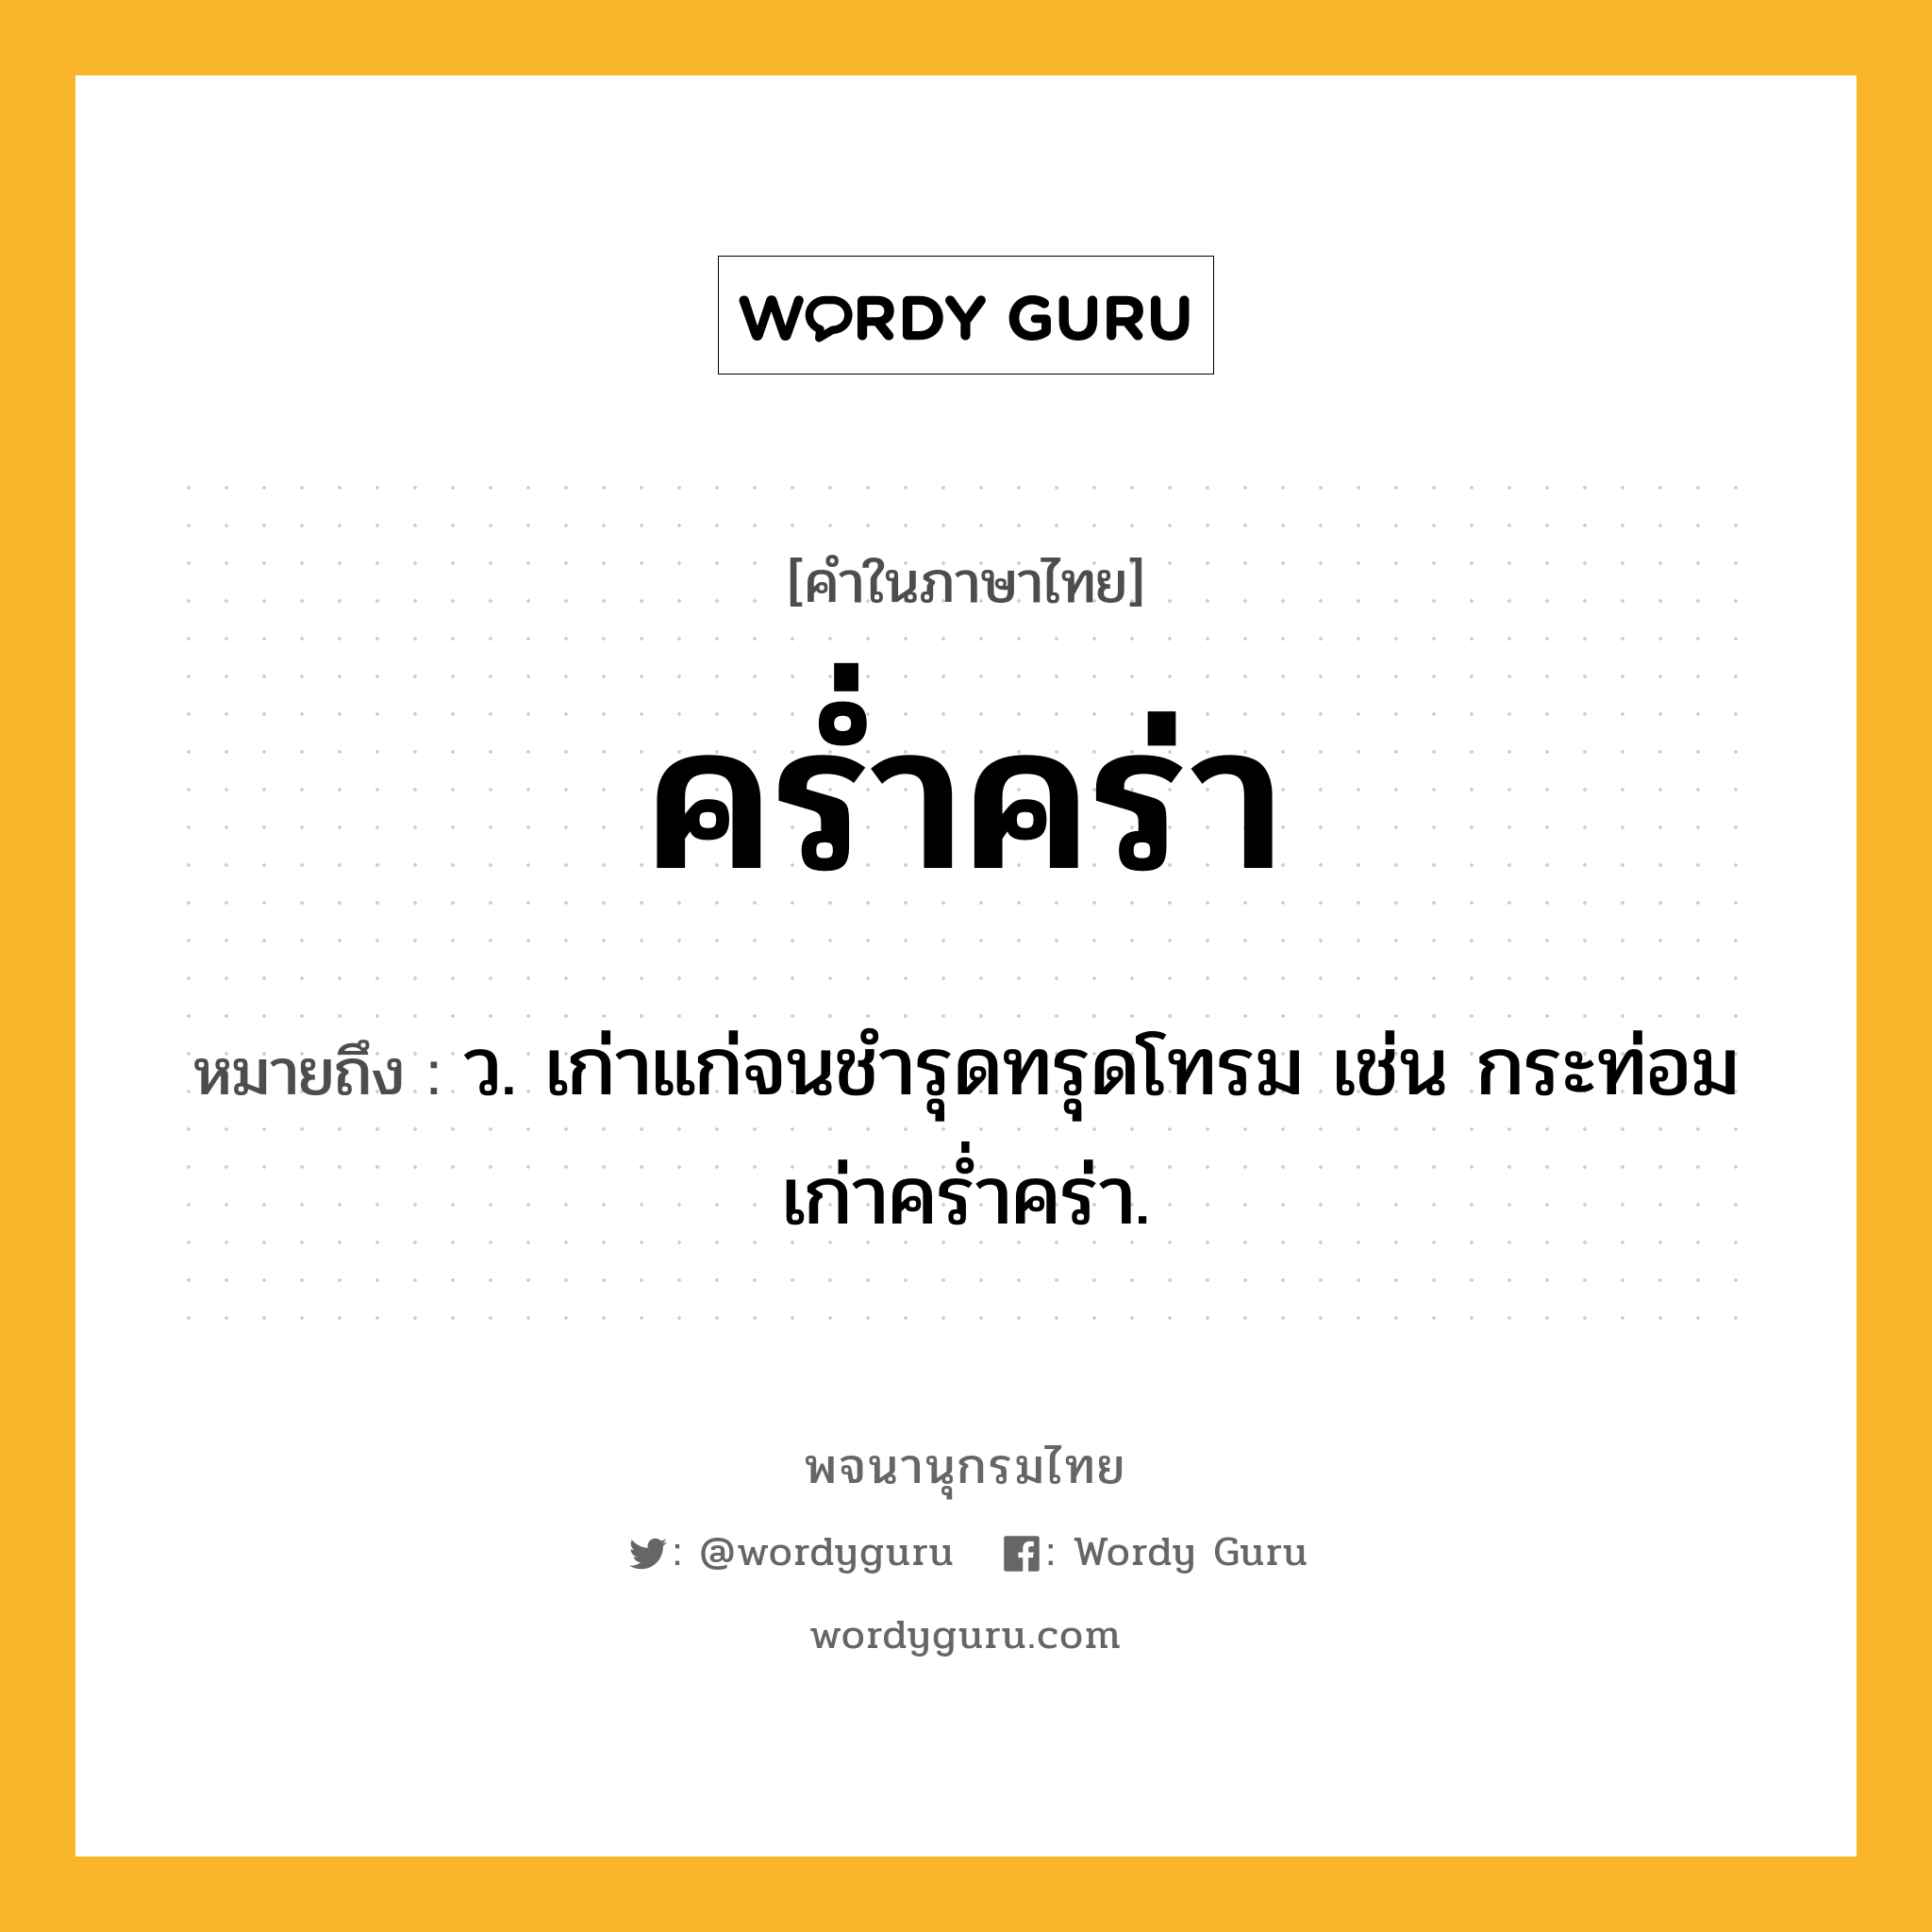 คร่ำคร่า ความหมาย หมายถึงอะไร?, คำในภาษาไทย คร่ำคร่า หมายถึง ว. เก่าแก่จนชํารุดทรุดโทรม เช่น กระท่อมเก่าคร่ำคร่า.